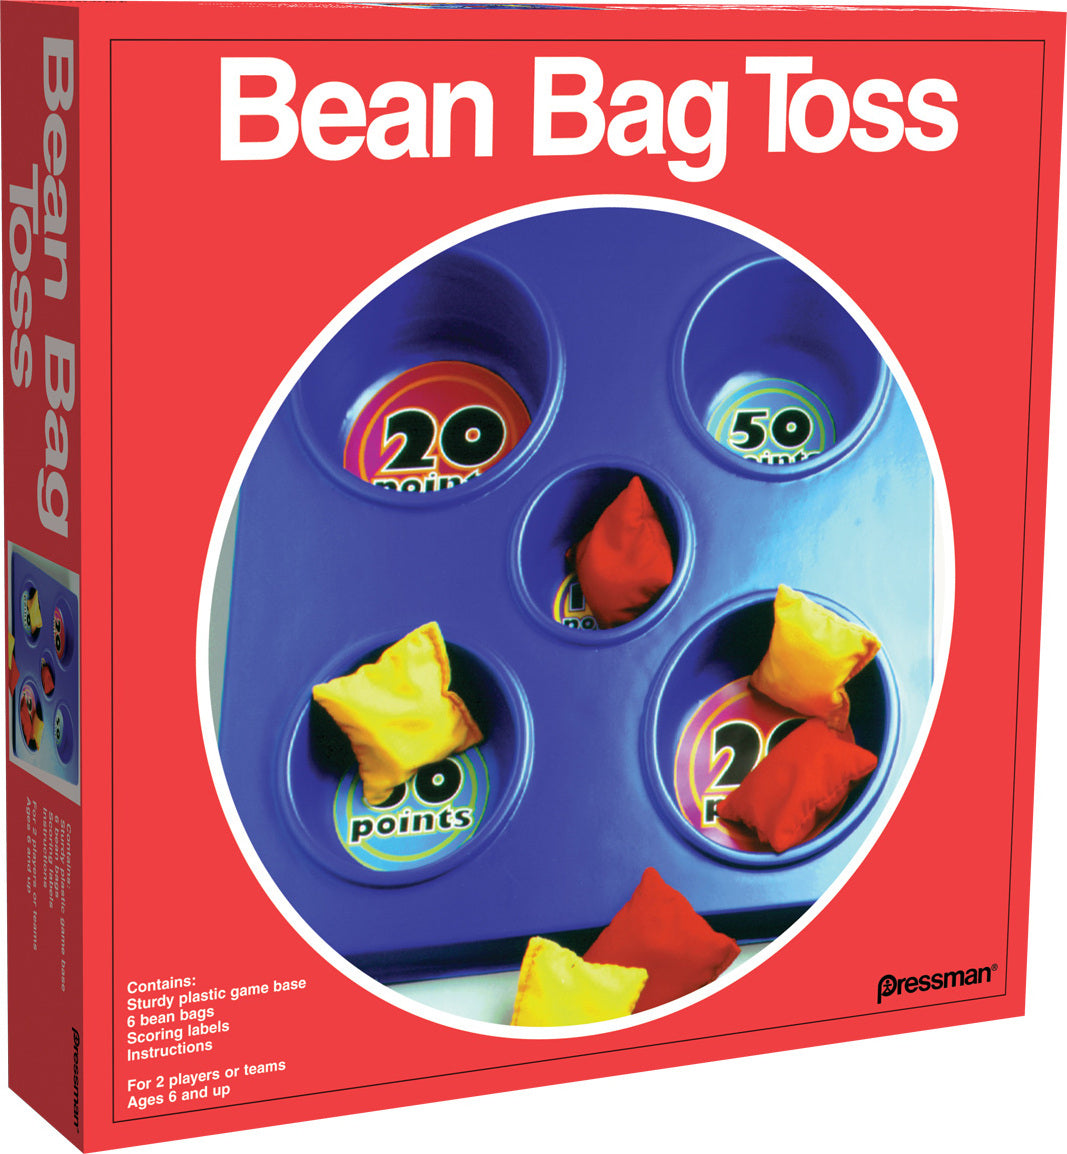 Bean Bag Toss (Red Box)